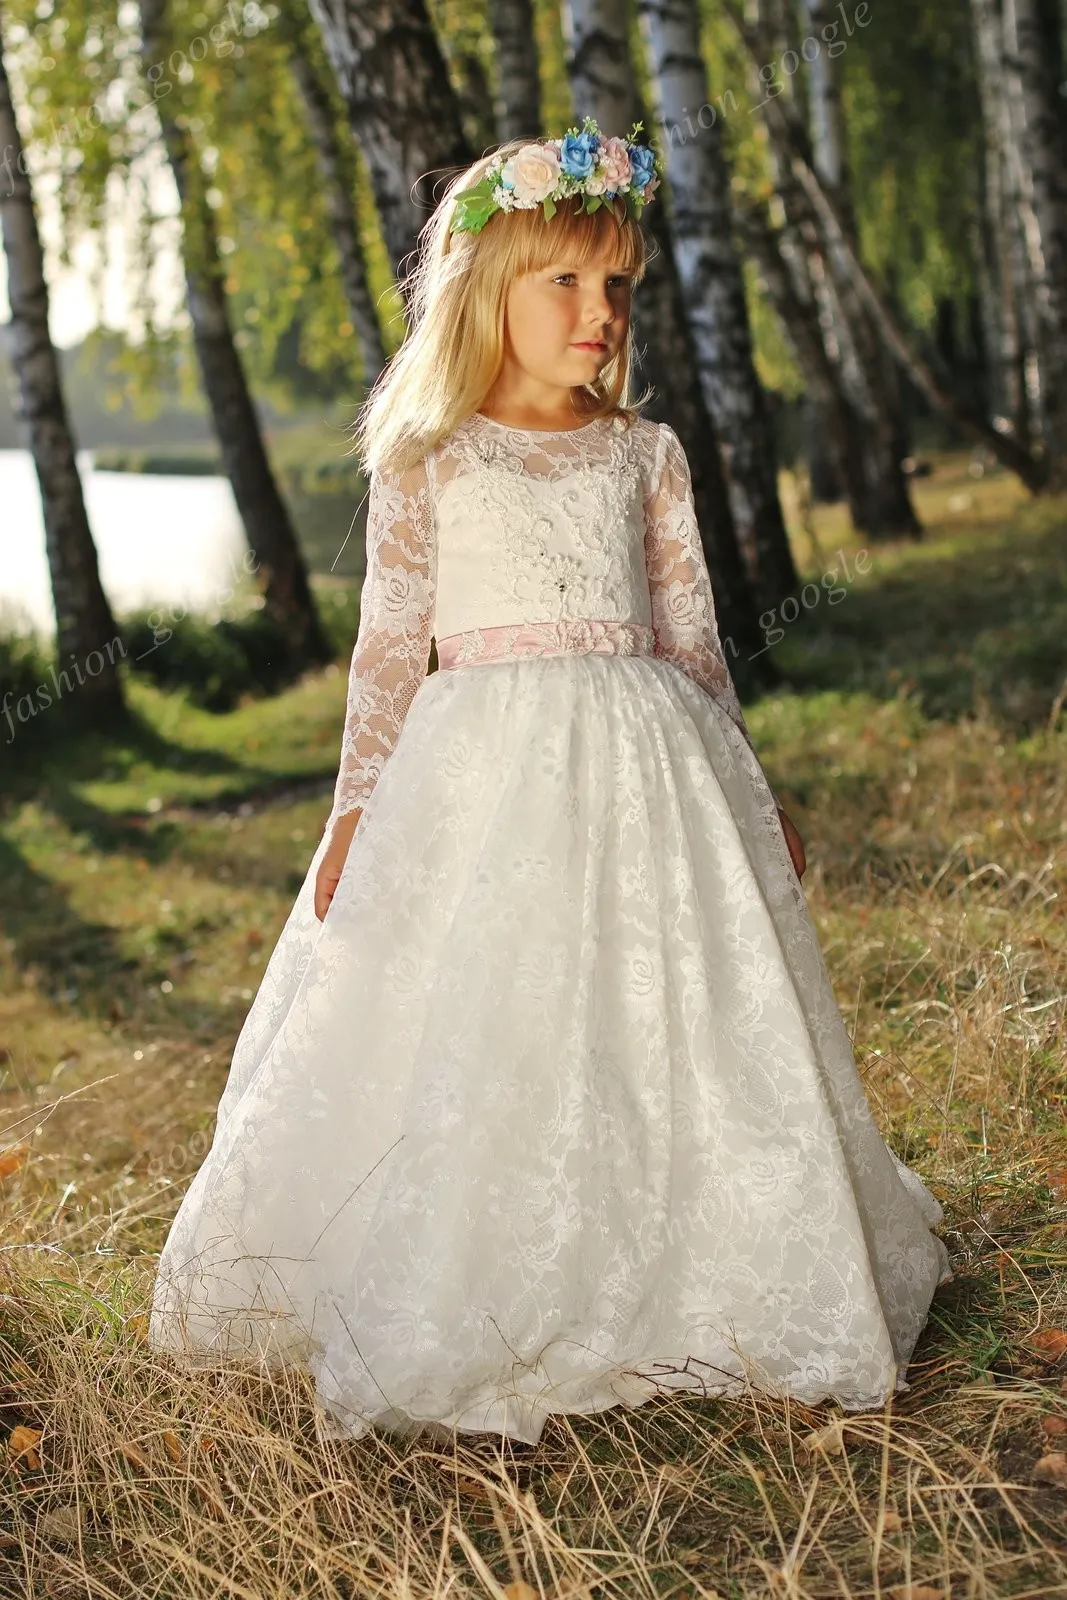 Komplett aus Spitze gefertigte Erstkommunionkleider für kleine Mädchen 2018 mit langen Ärmeln, rosa Schärpe, elegantes Mutter-Tochter-Hochzeitskleid für Blumenmädchen